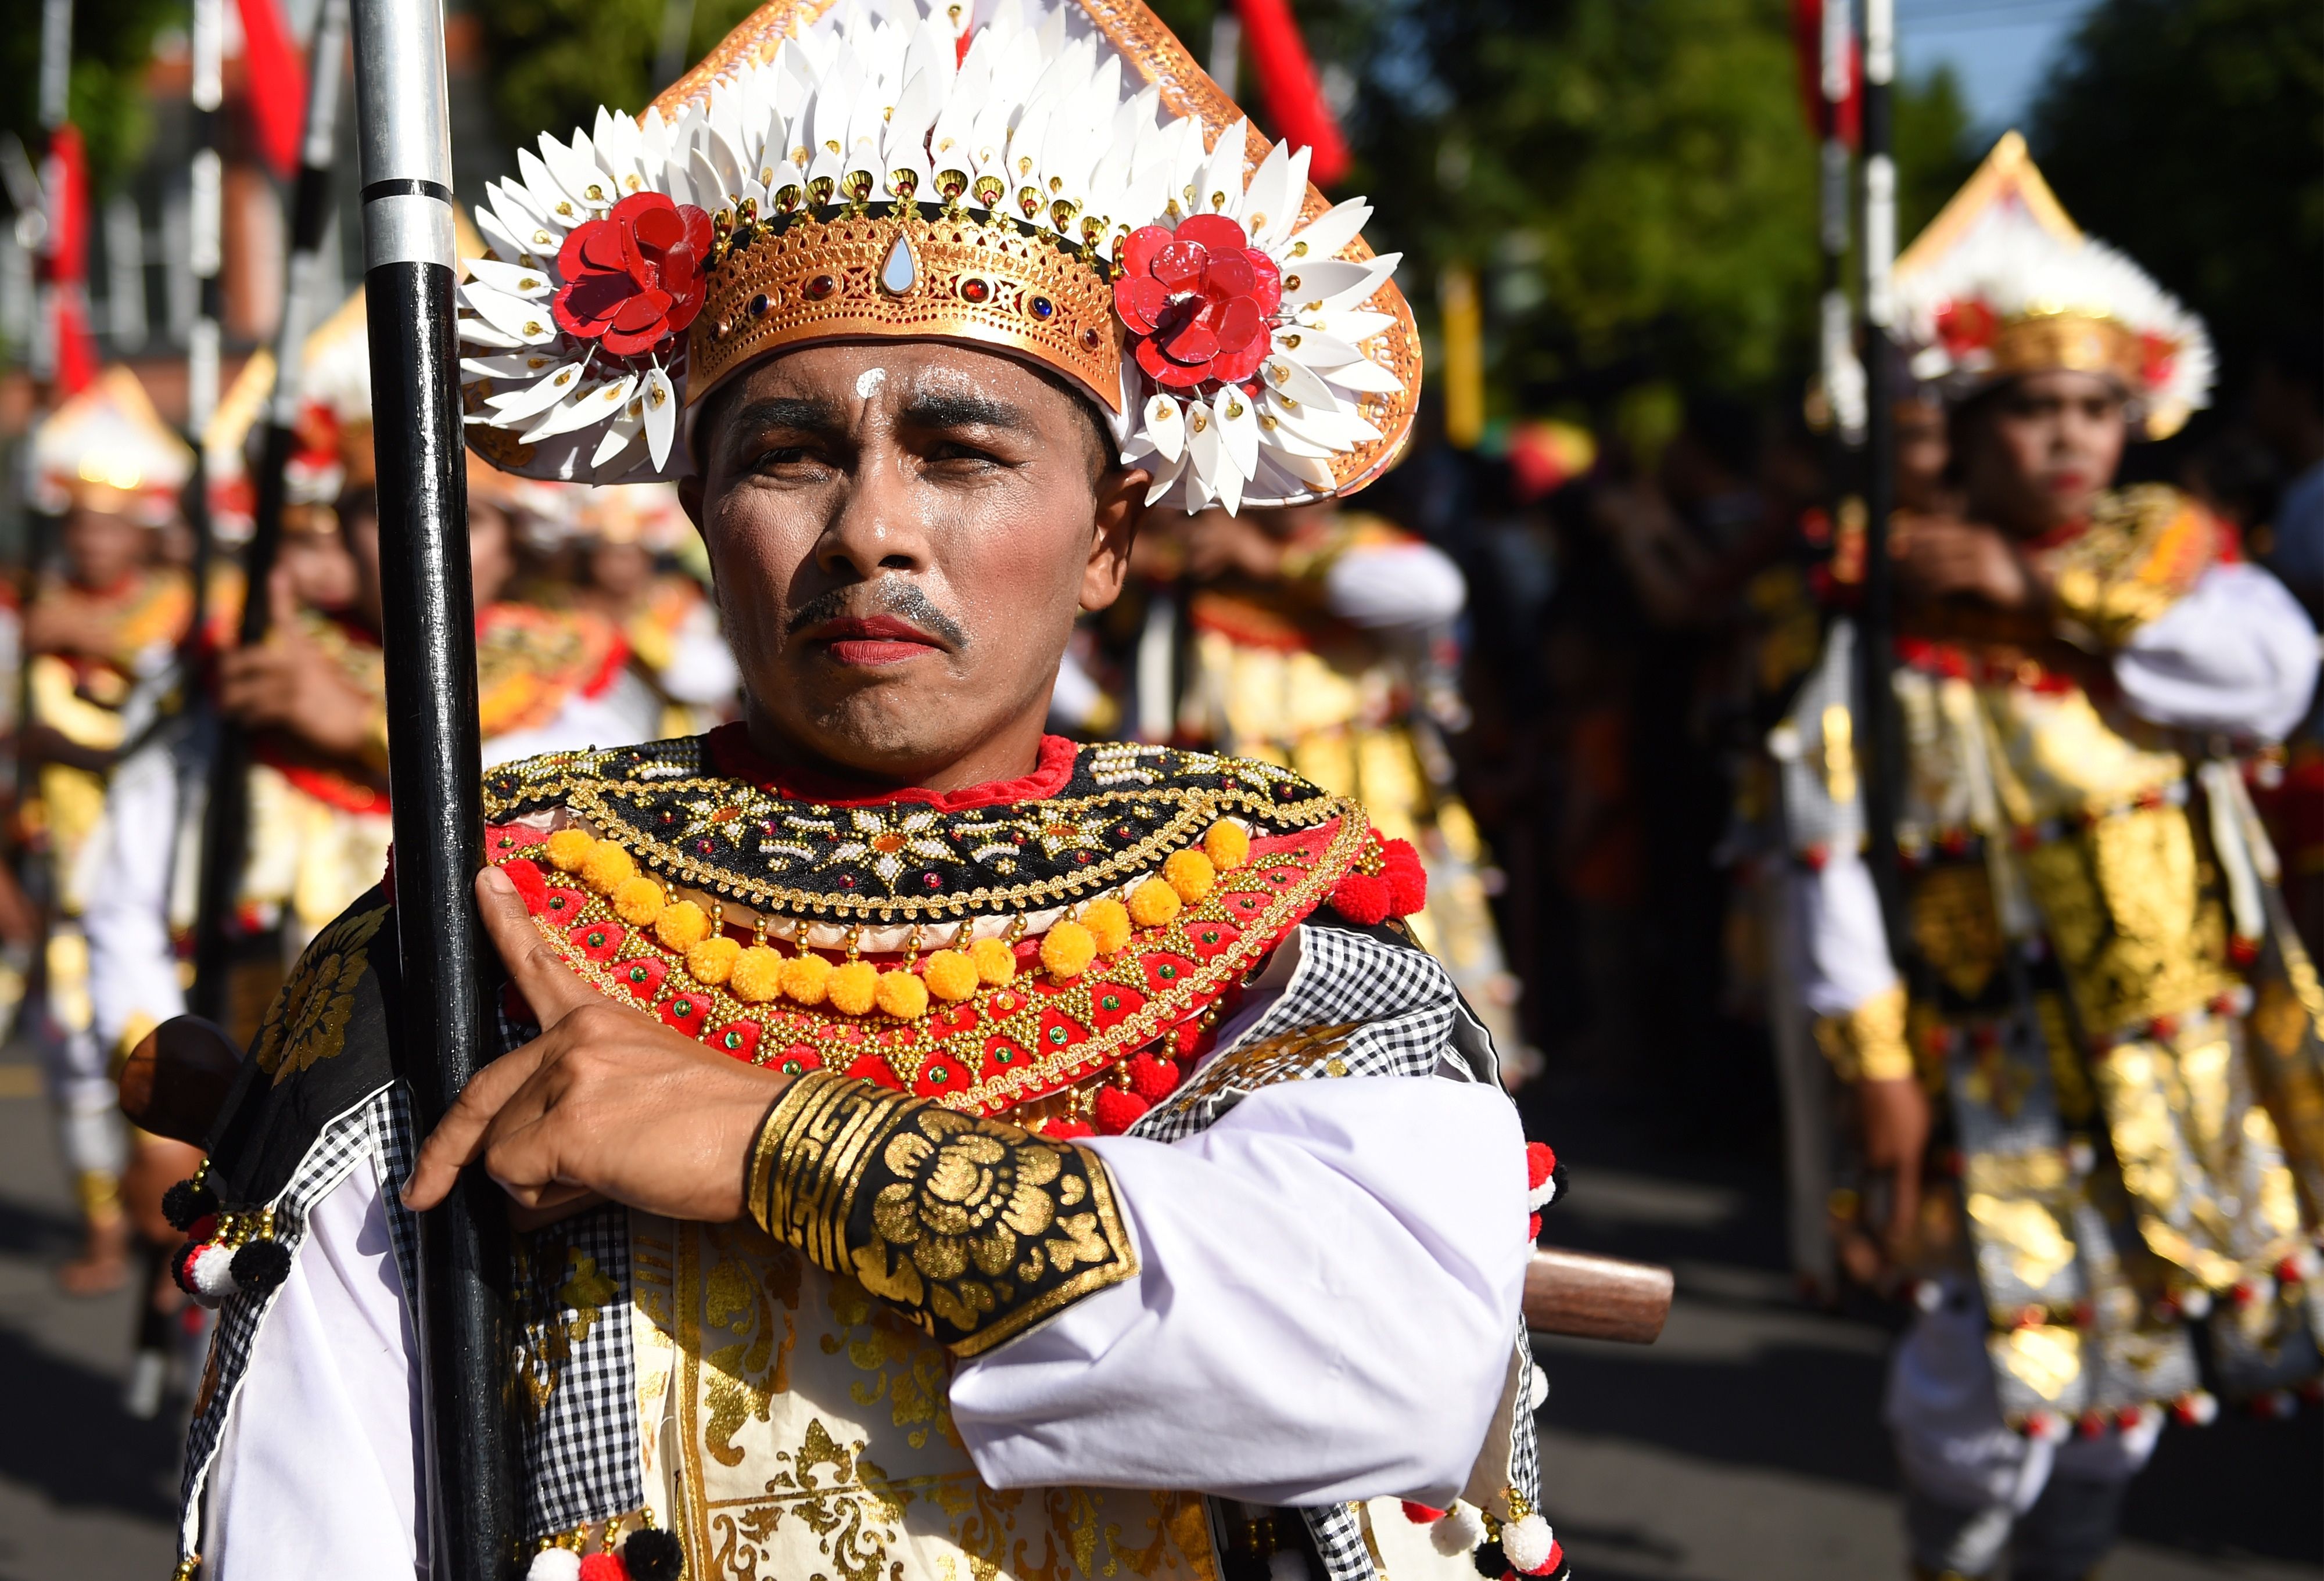 احتفالات خاصة بمهرجان بالى للفنون فى اندونيسيا